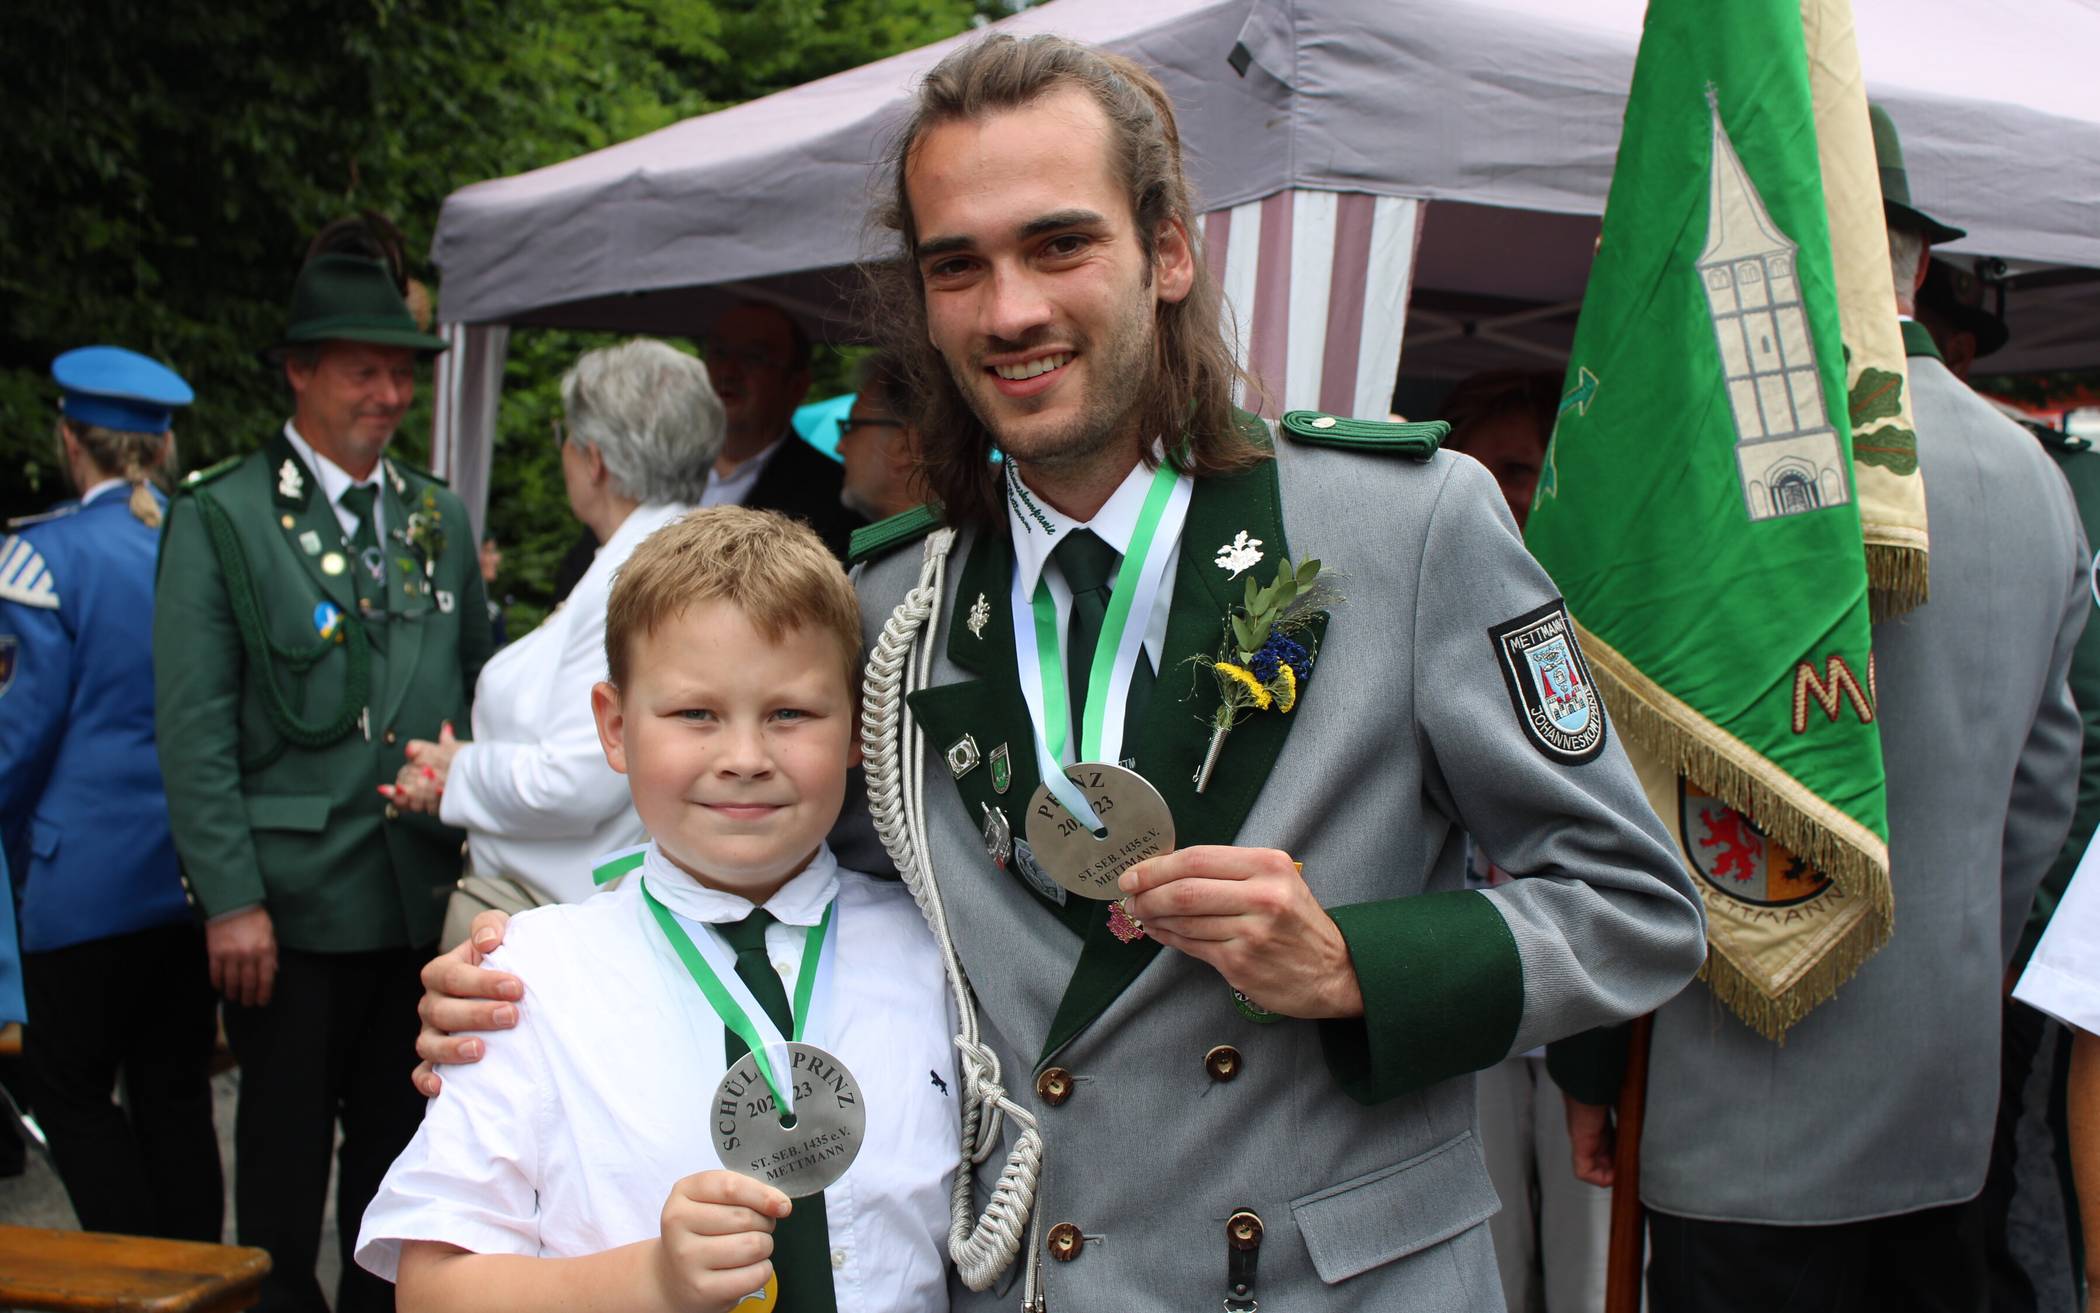  Treffsicher: Schülerprinz Ole Winkelhane (links) und Jungschützenprinz Fabian Stein zeigen kurz nach ihrem Erfolg ihre Medaillen. 